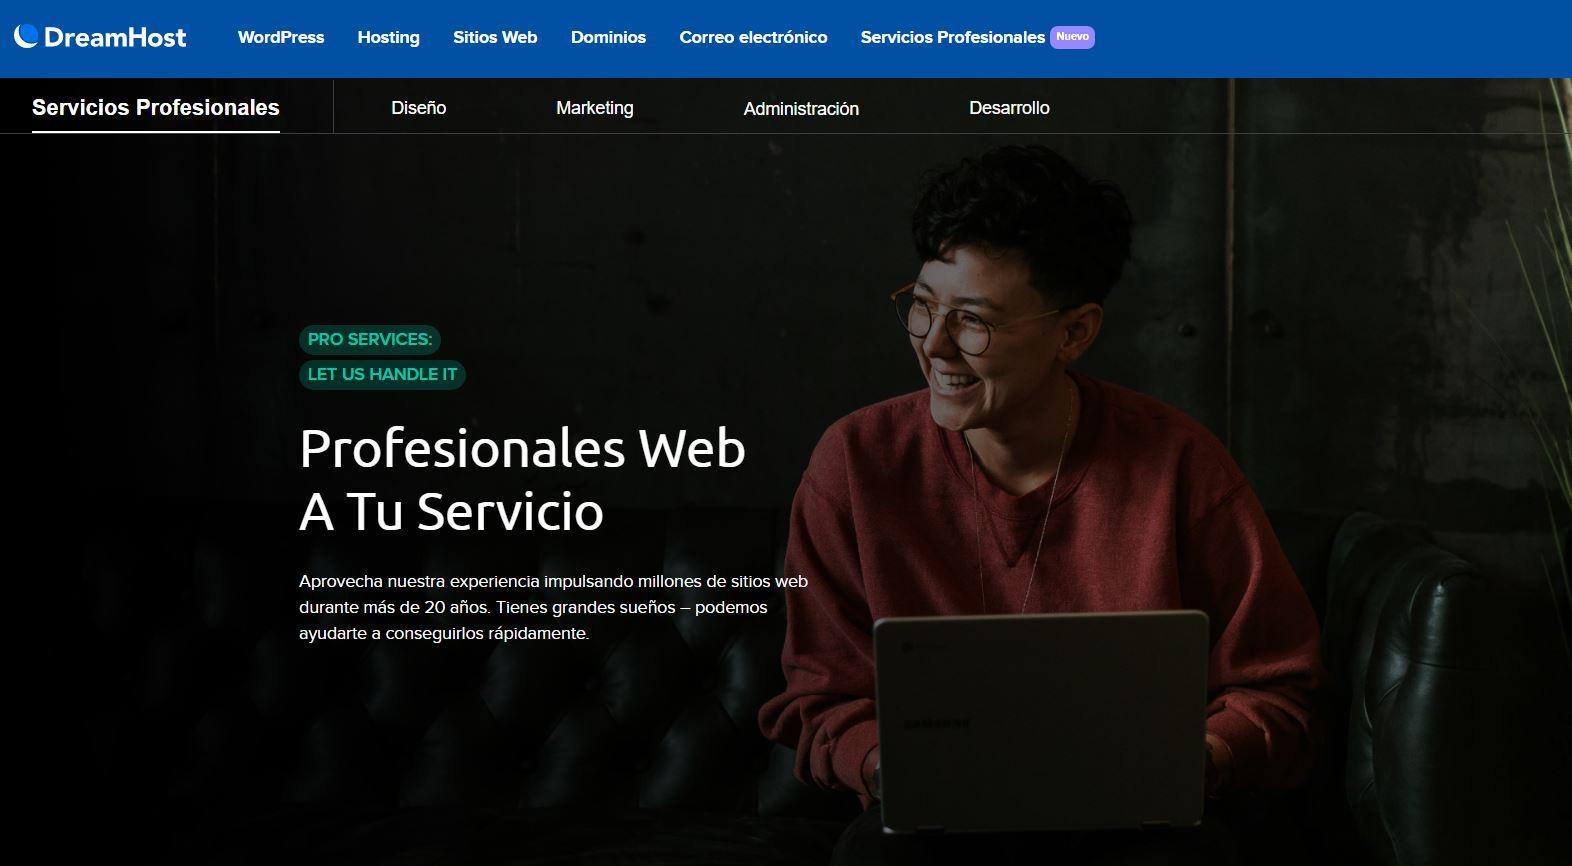 La página web de Servicios Profesionales de DreamHost.